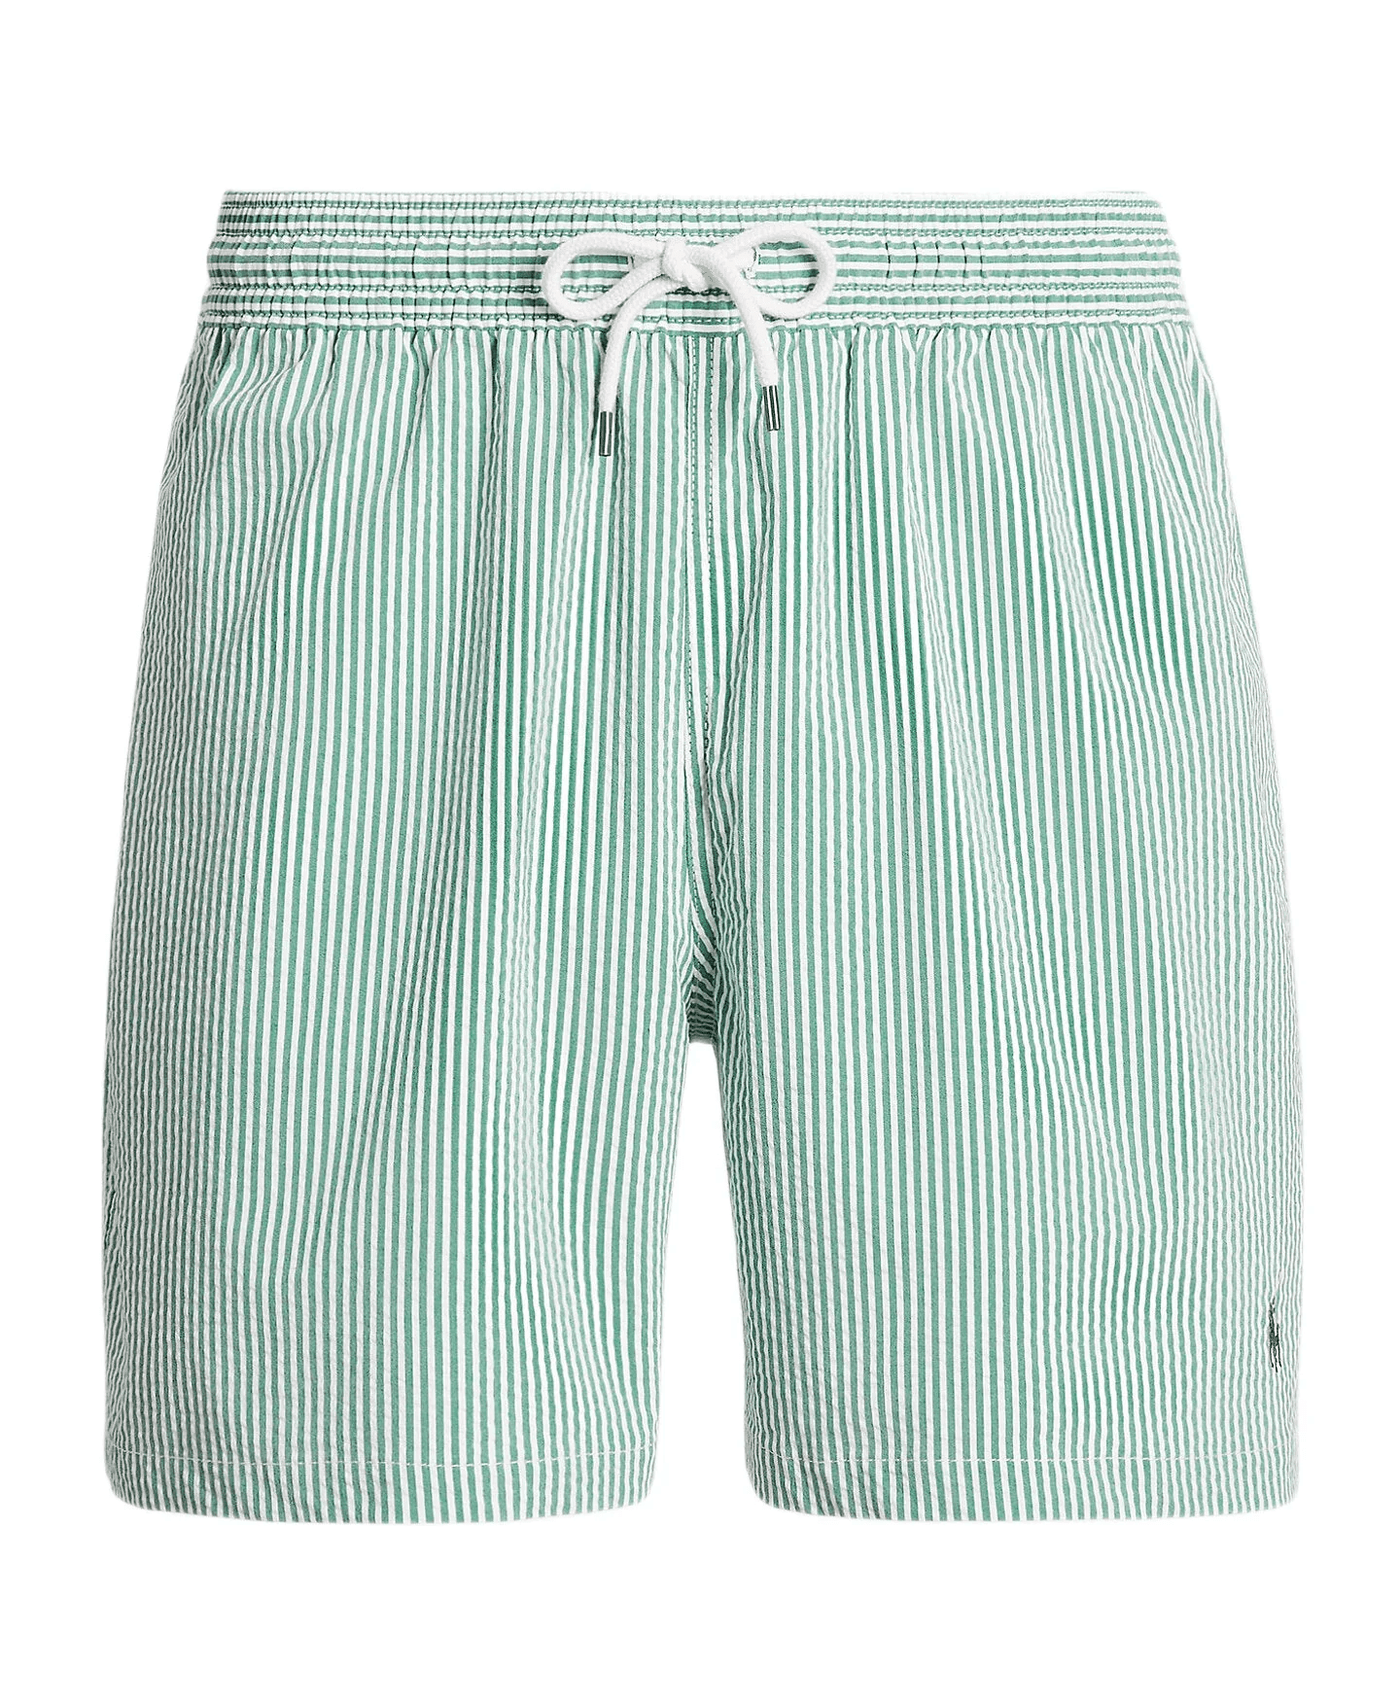 Polo Ralph Lauren - Short de bain vert Traveler classique - Lothaire